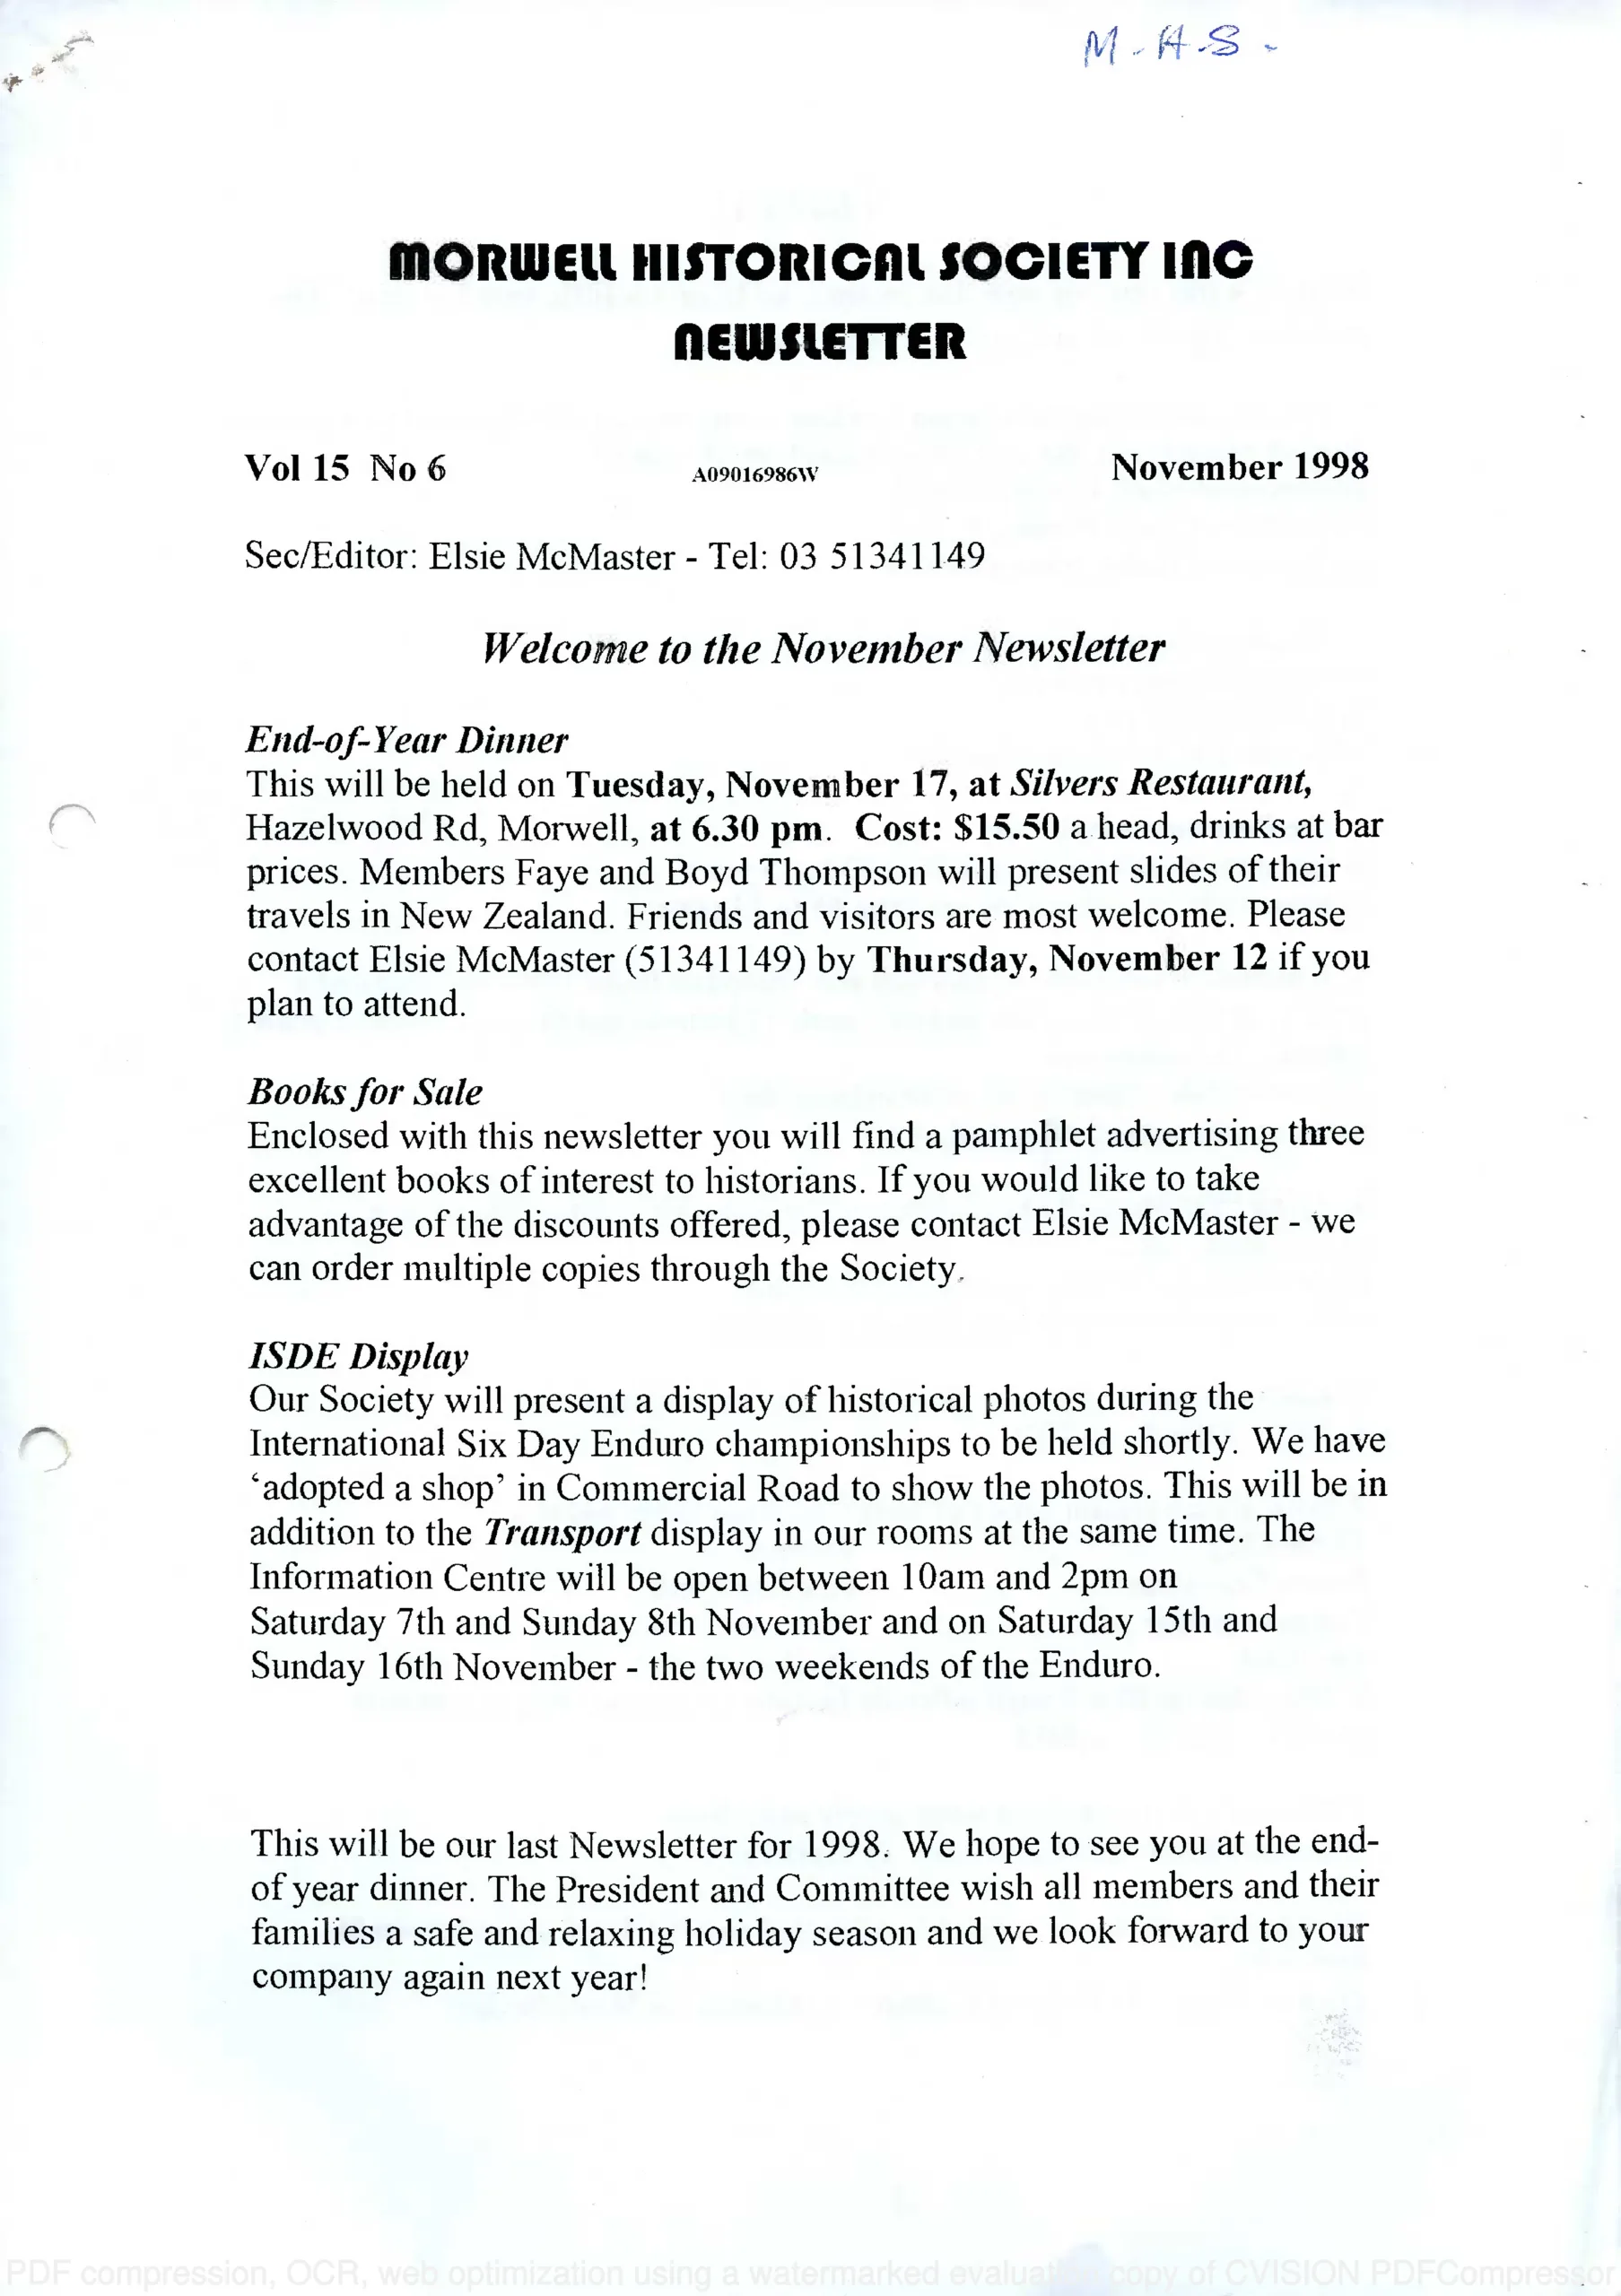 Newsletter November 1998